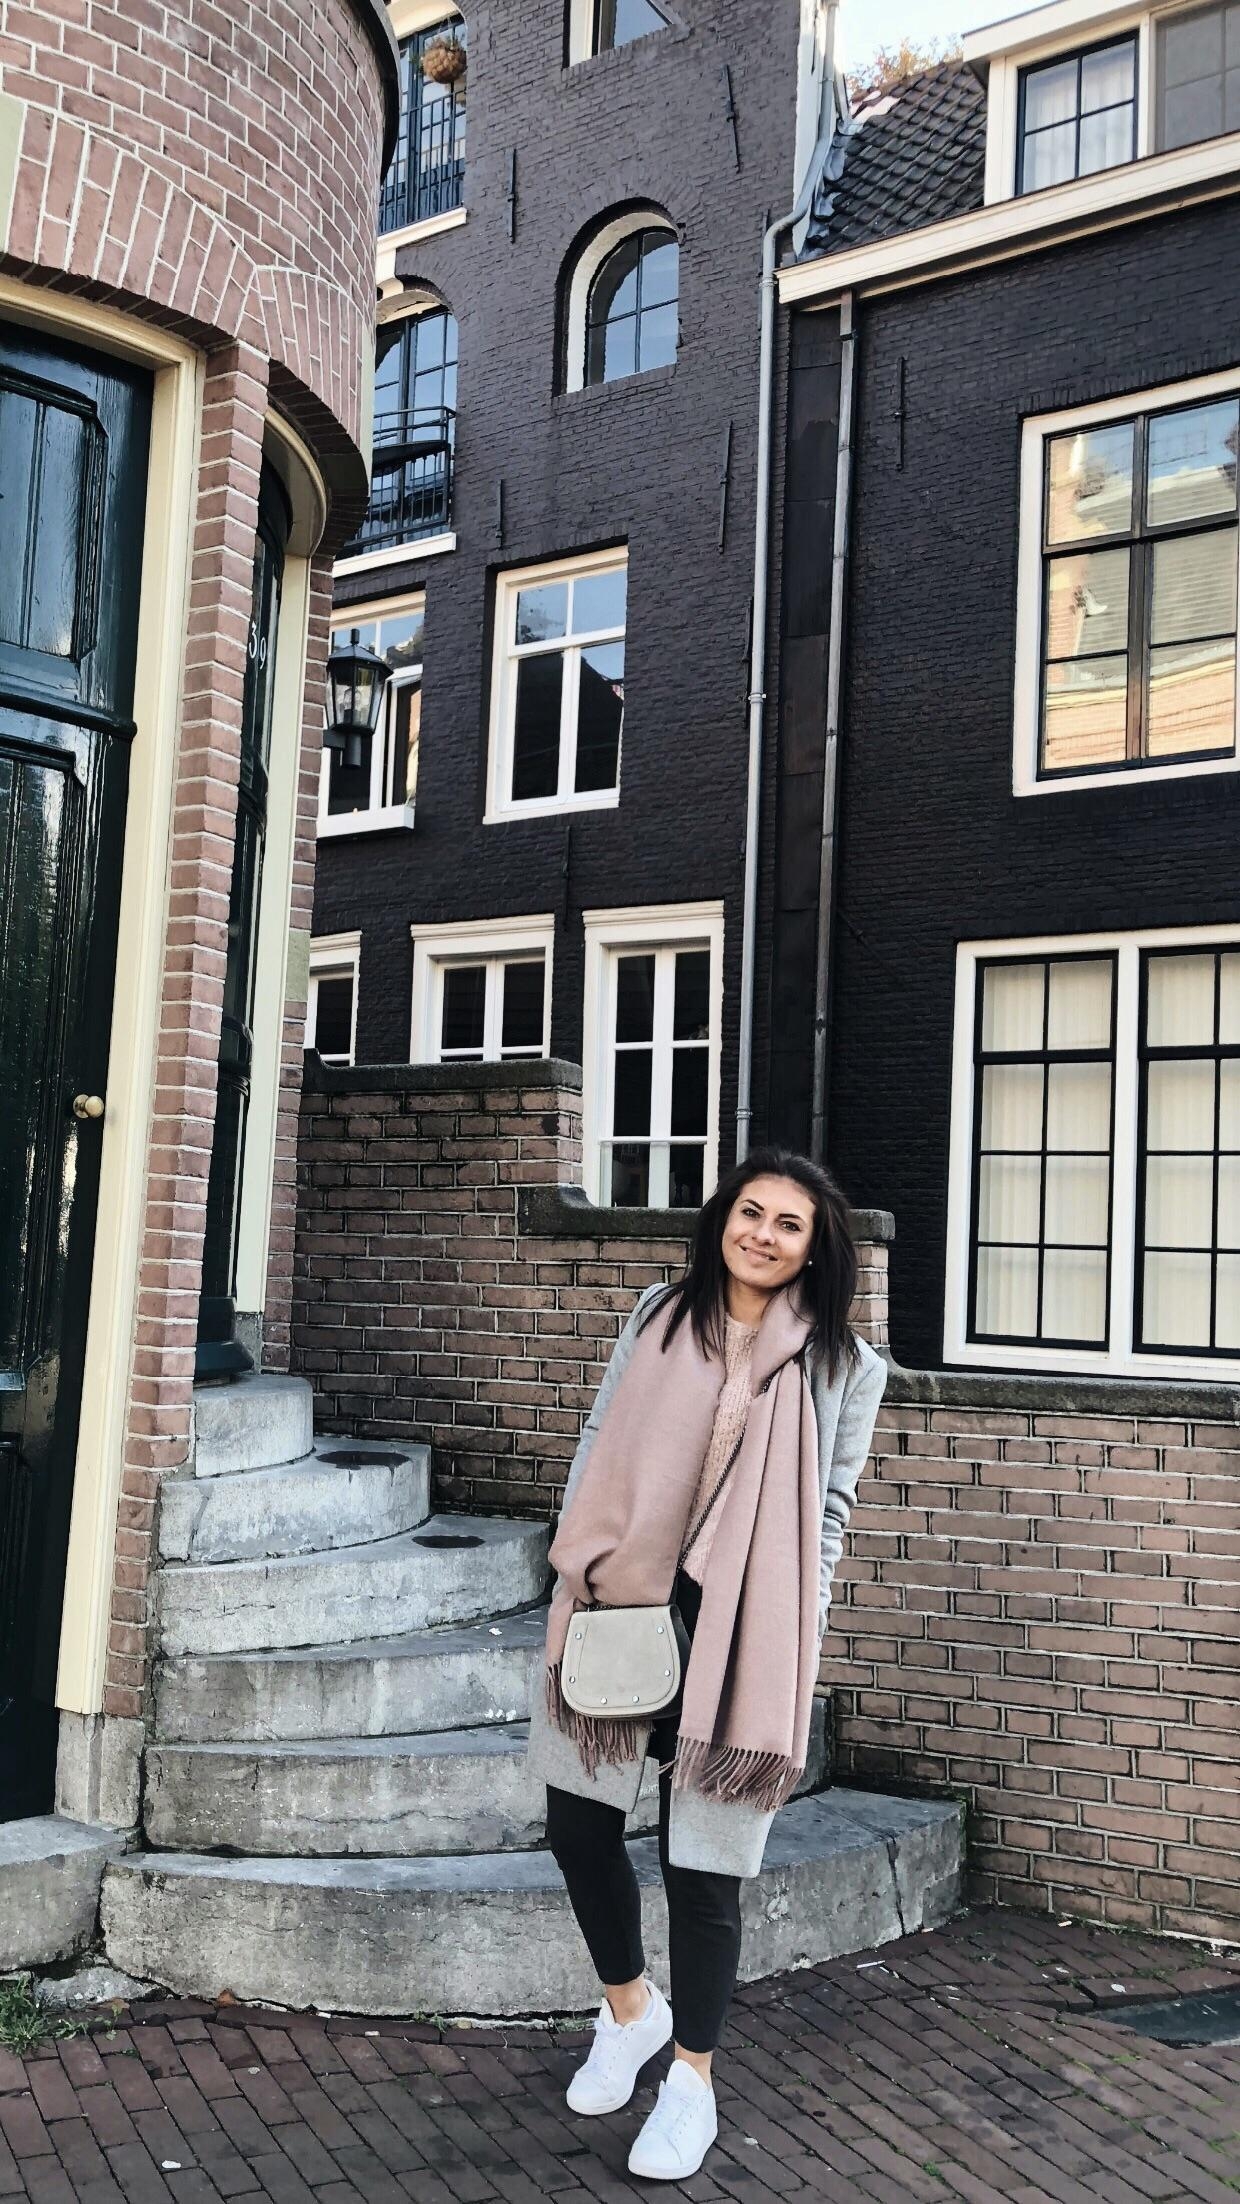 immer wieder verliebt in die kleinen Grachten in Amsterdam #amsterdam #visitamsterdam #fashioncrush #couchliebt 